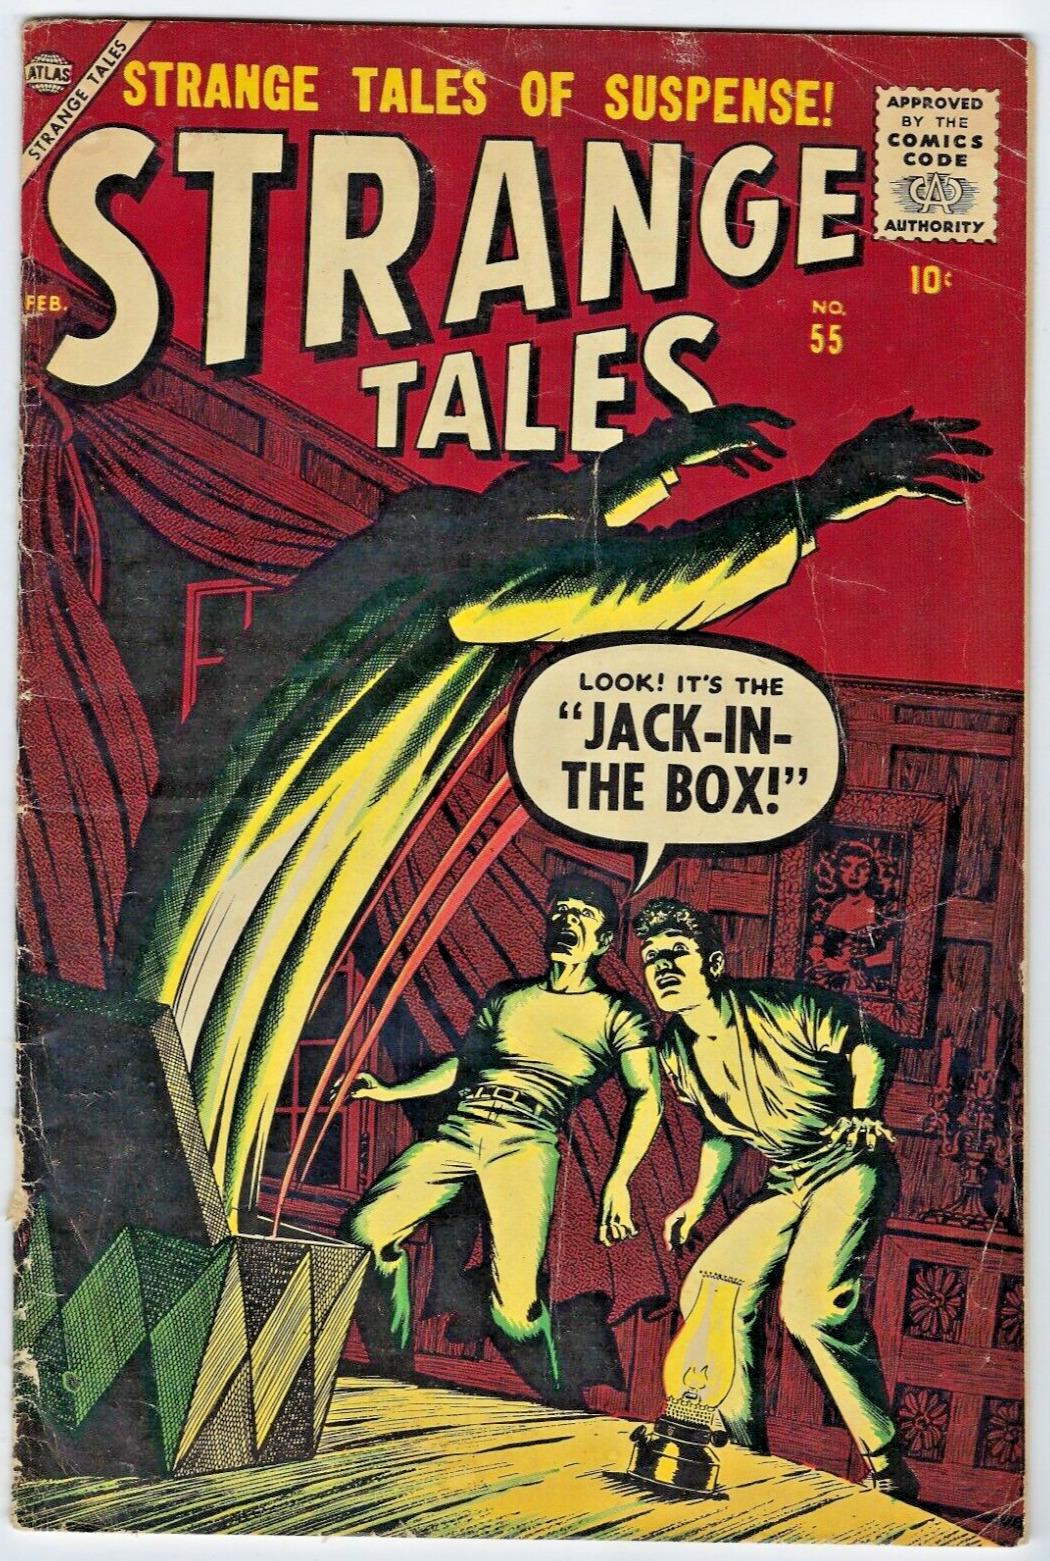 Strange Tales #55 (1957) Very Good+ (4.5) Everett Cover Joe Maneely Art Stan Lee